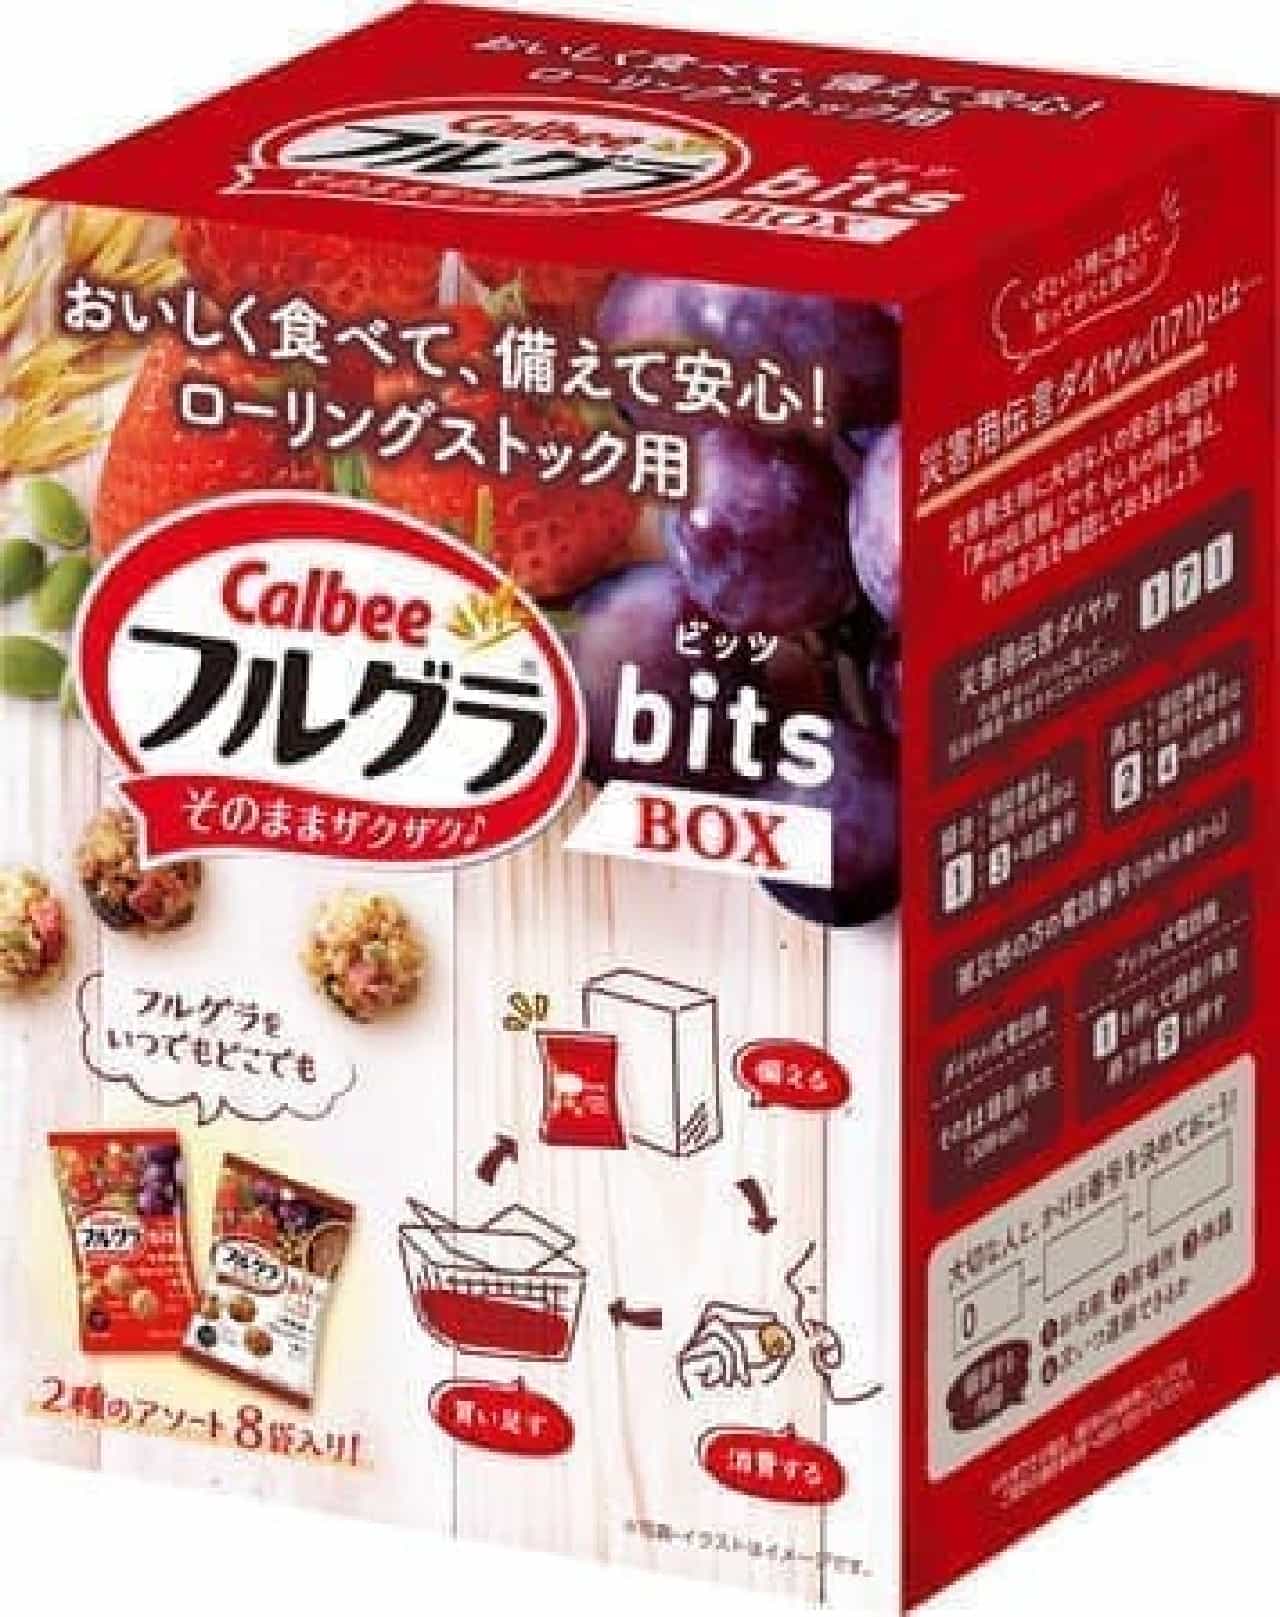 「ローリングストック用フルグラビッツBOX」発売 -- 専用ボックスに8袋入り【防災】